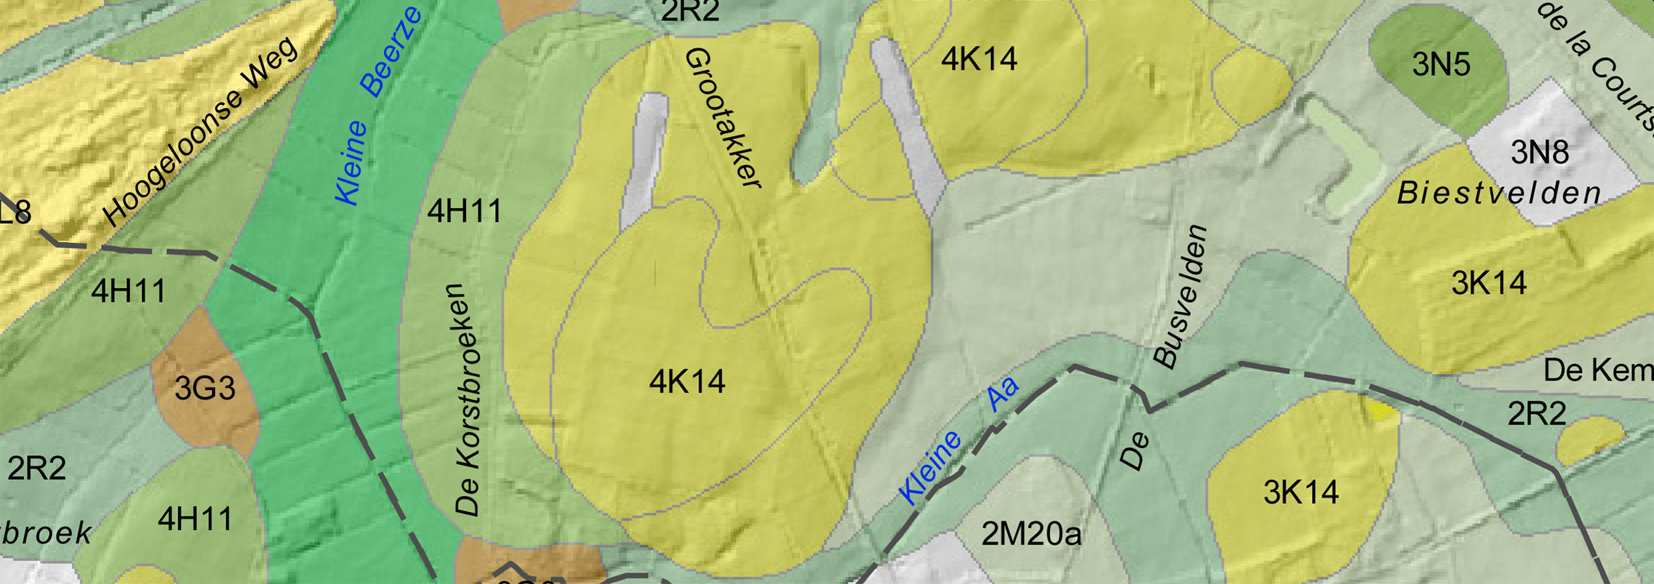 Ten noordoosten en zuidoosten van de kern zijn nog overblijfselen van het oude stroomgebied van de Hazenloop aanwezig.